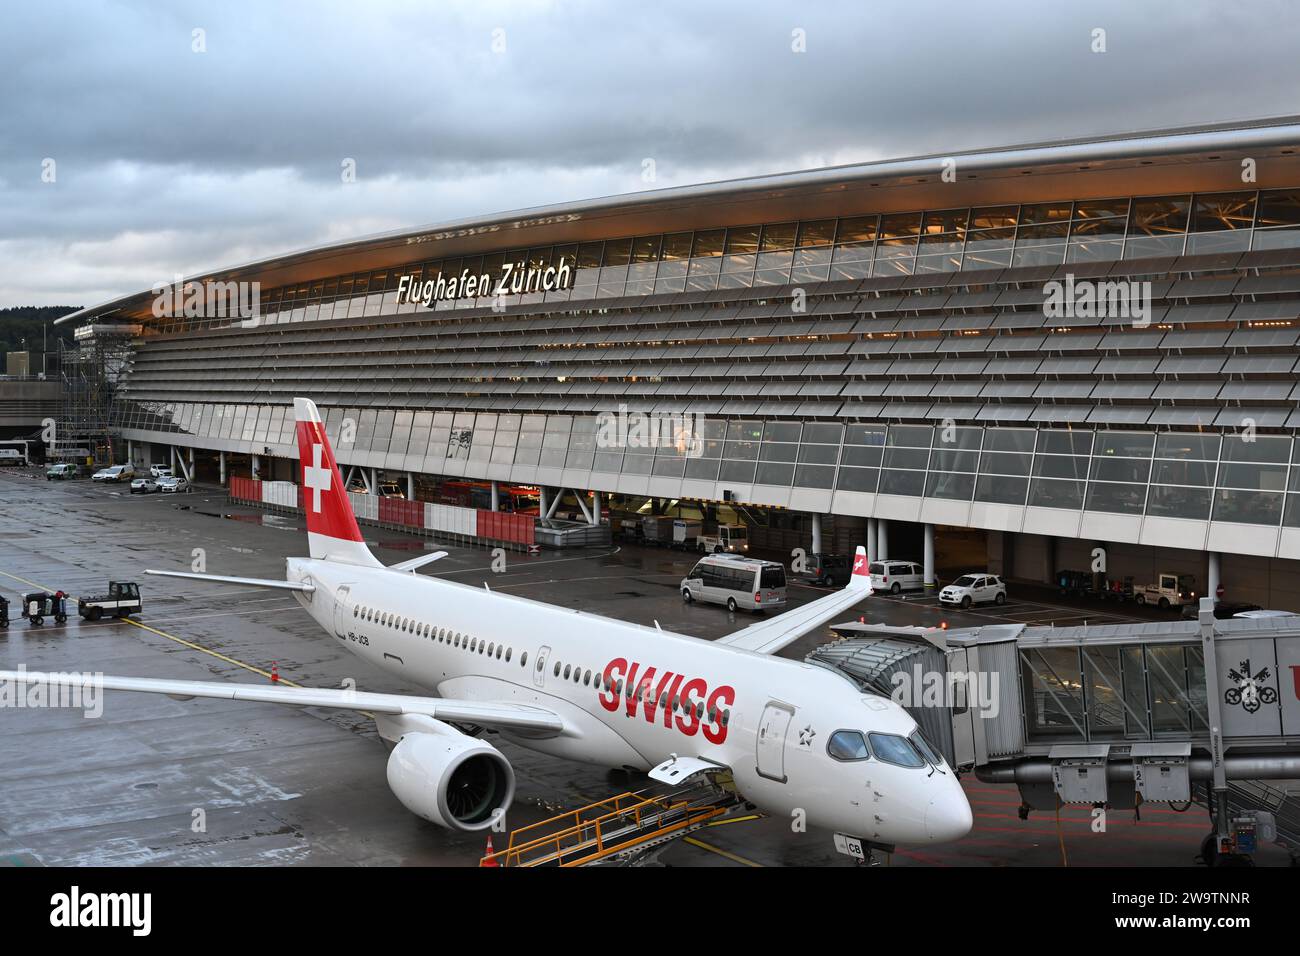 Avion de la compagnie suisse est garé à l'aéroport de Zurich. L'avion est connecté pour tirer le bras ou le connecteur pour embarquer le passager. Banque D'Images